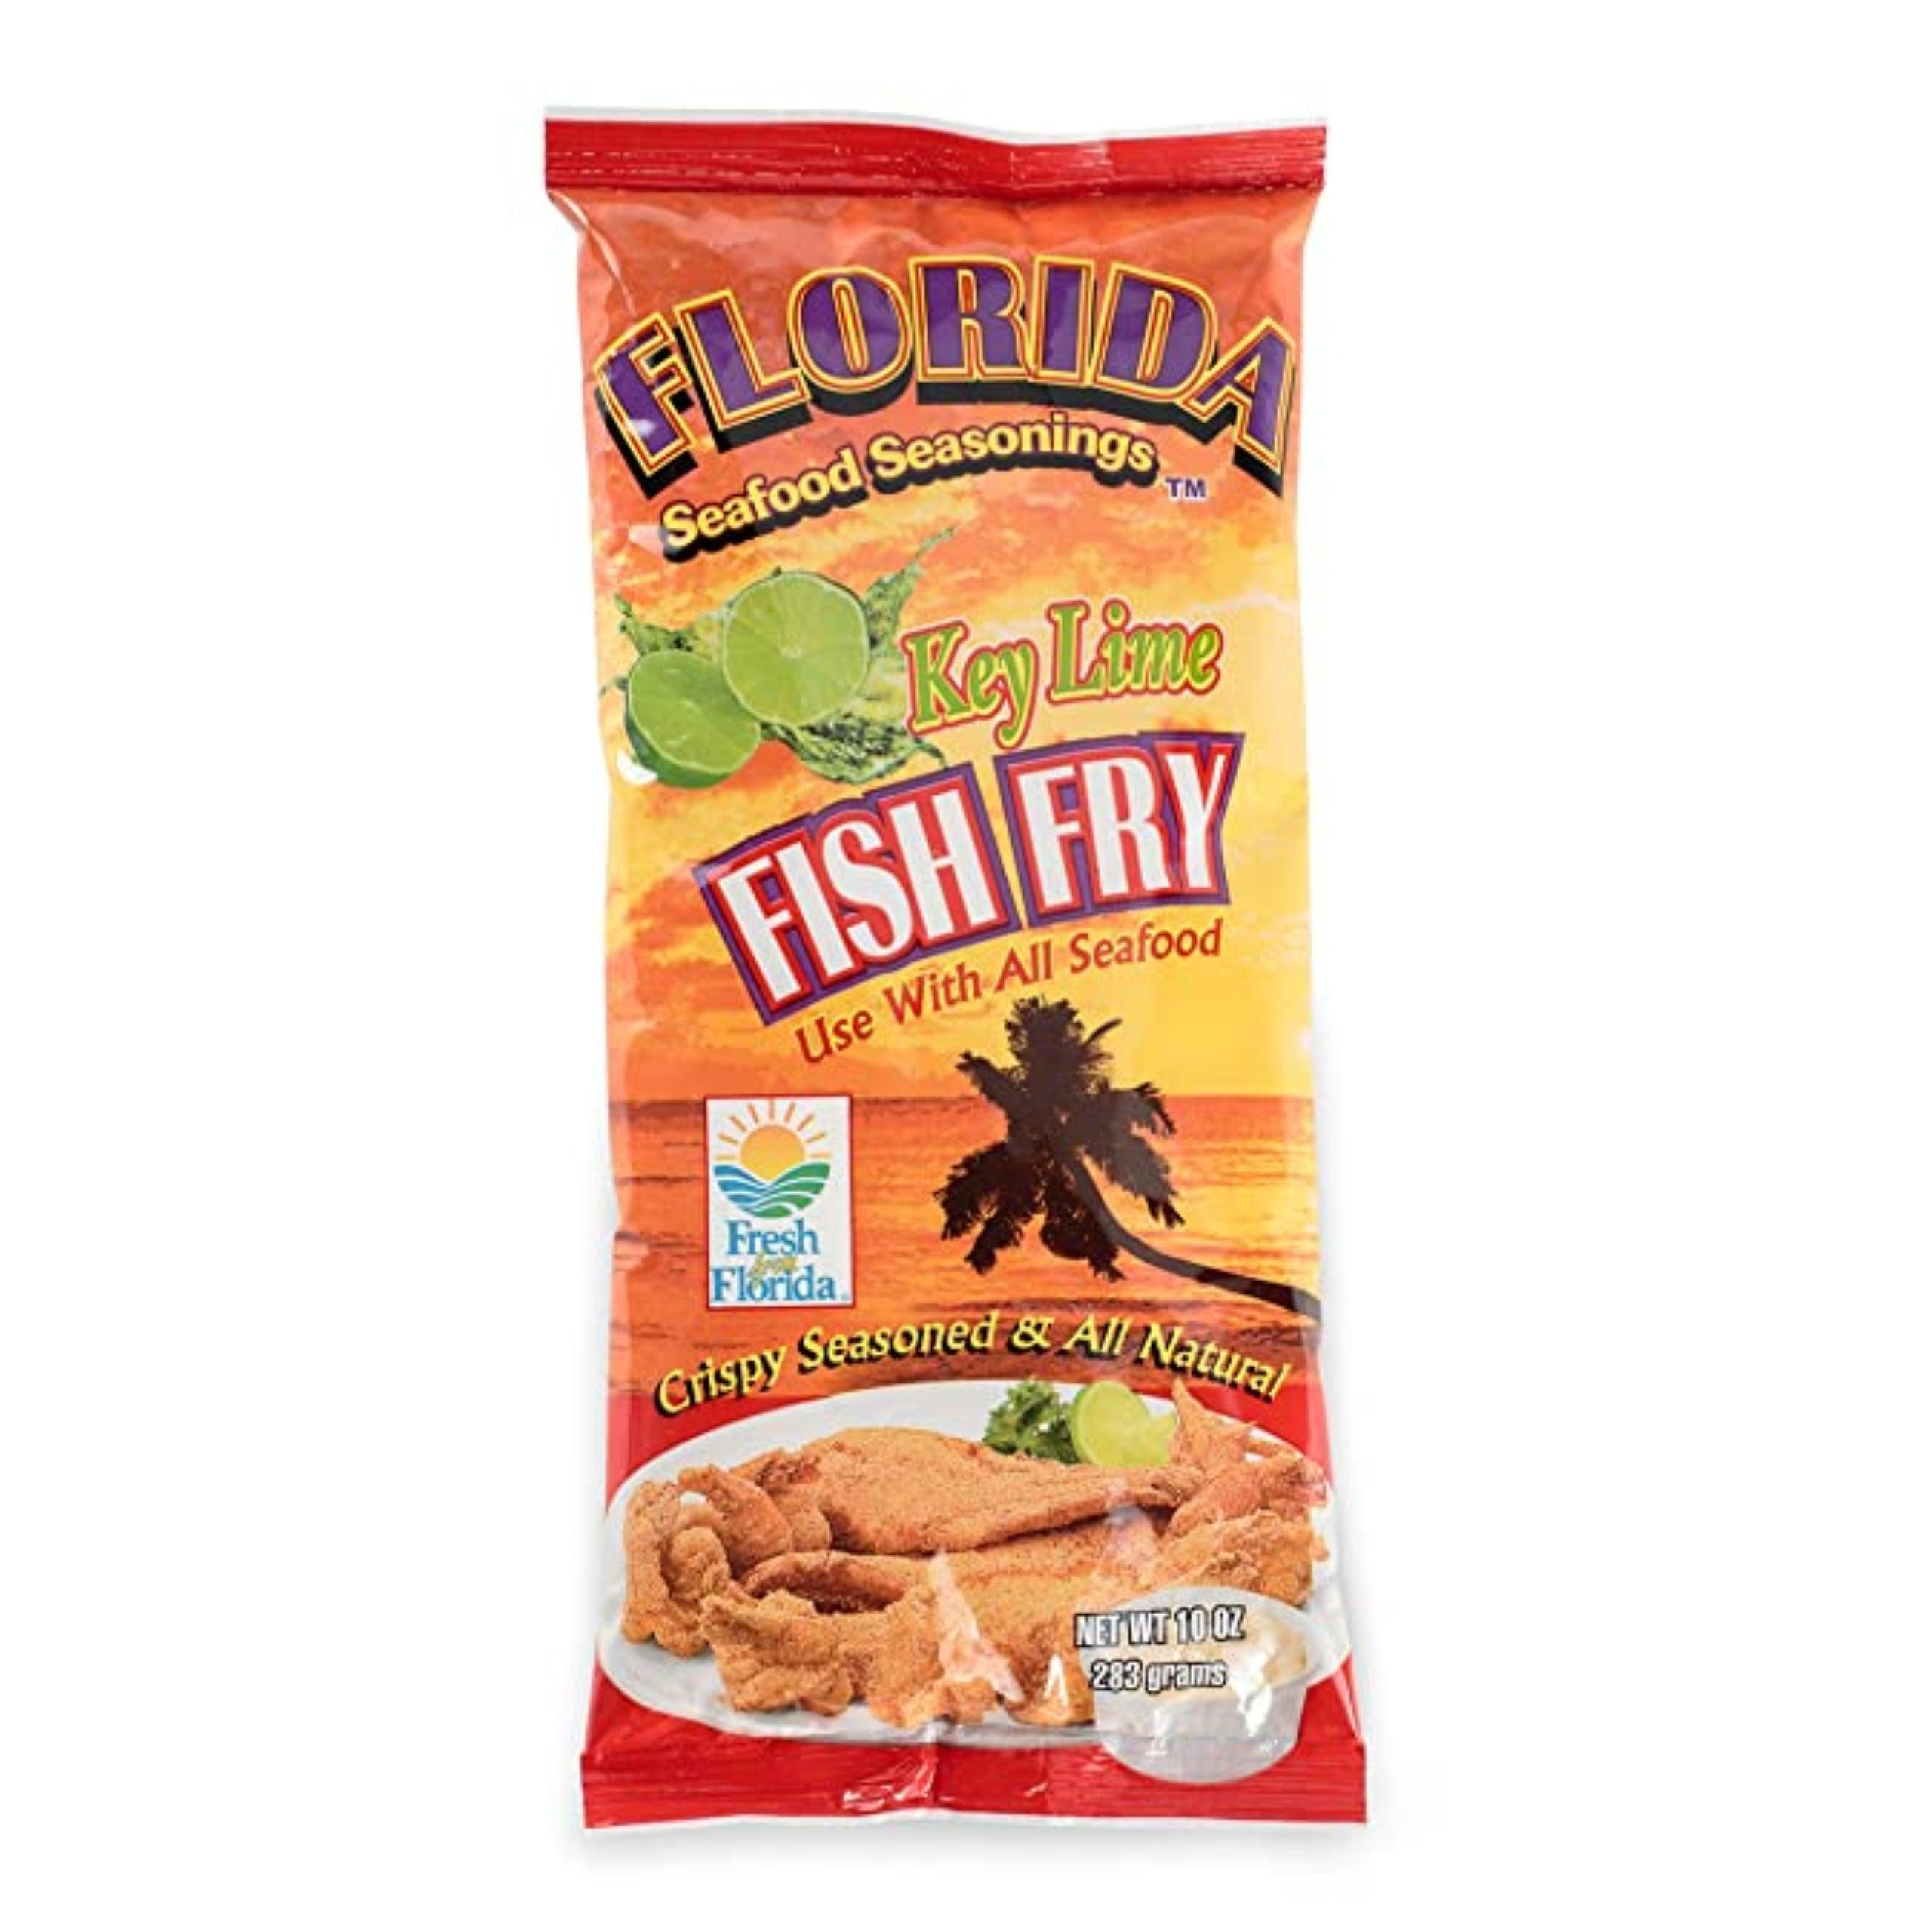 Louisiana Fish Fry Seasoned Spicy Crispy Chicken Fry Batter Mix, 9